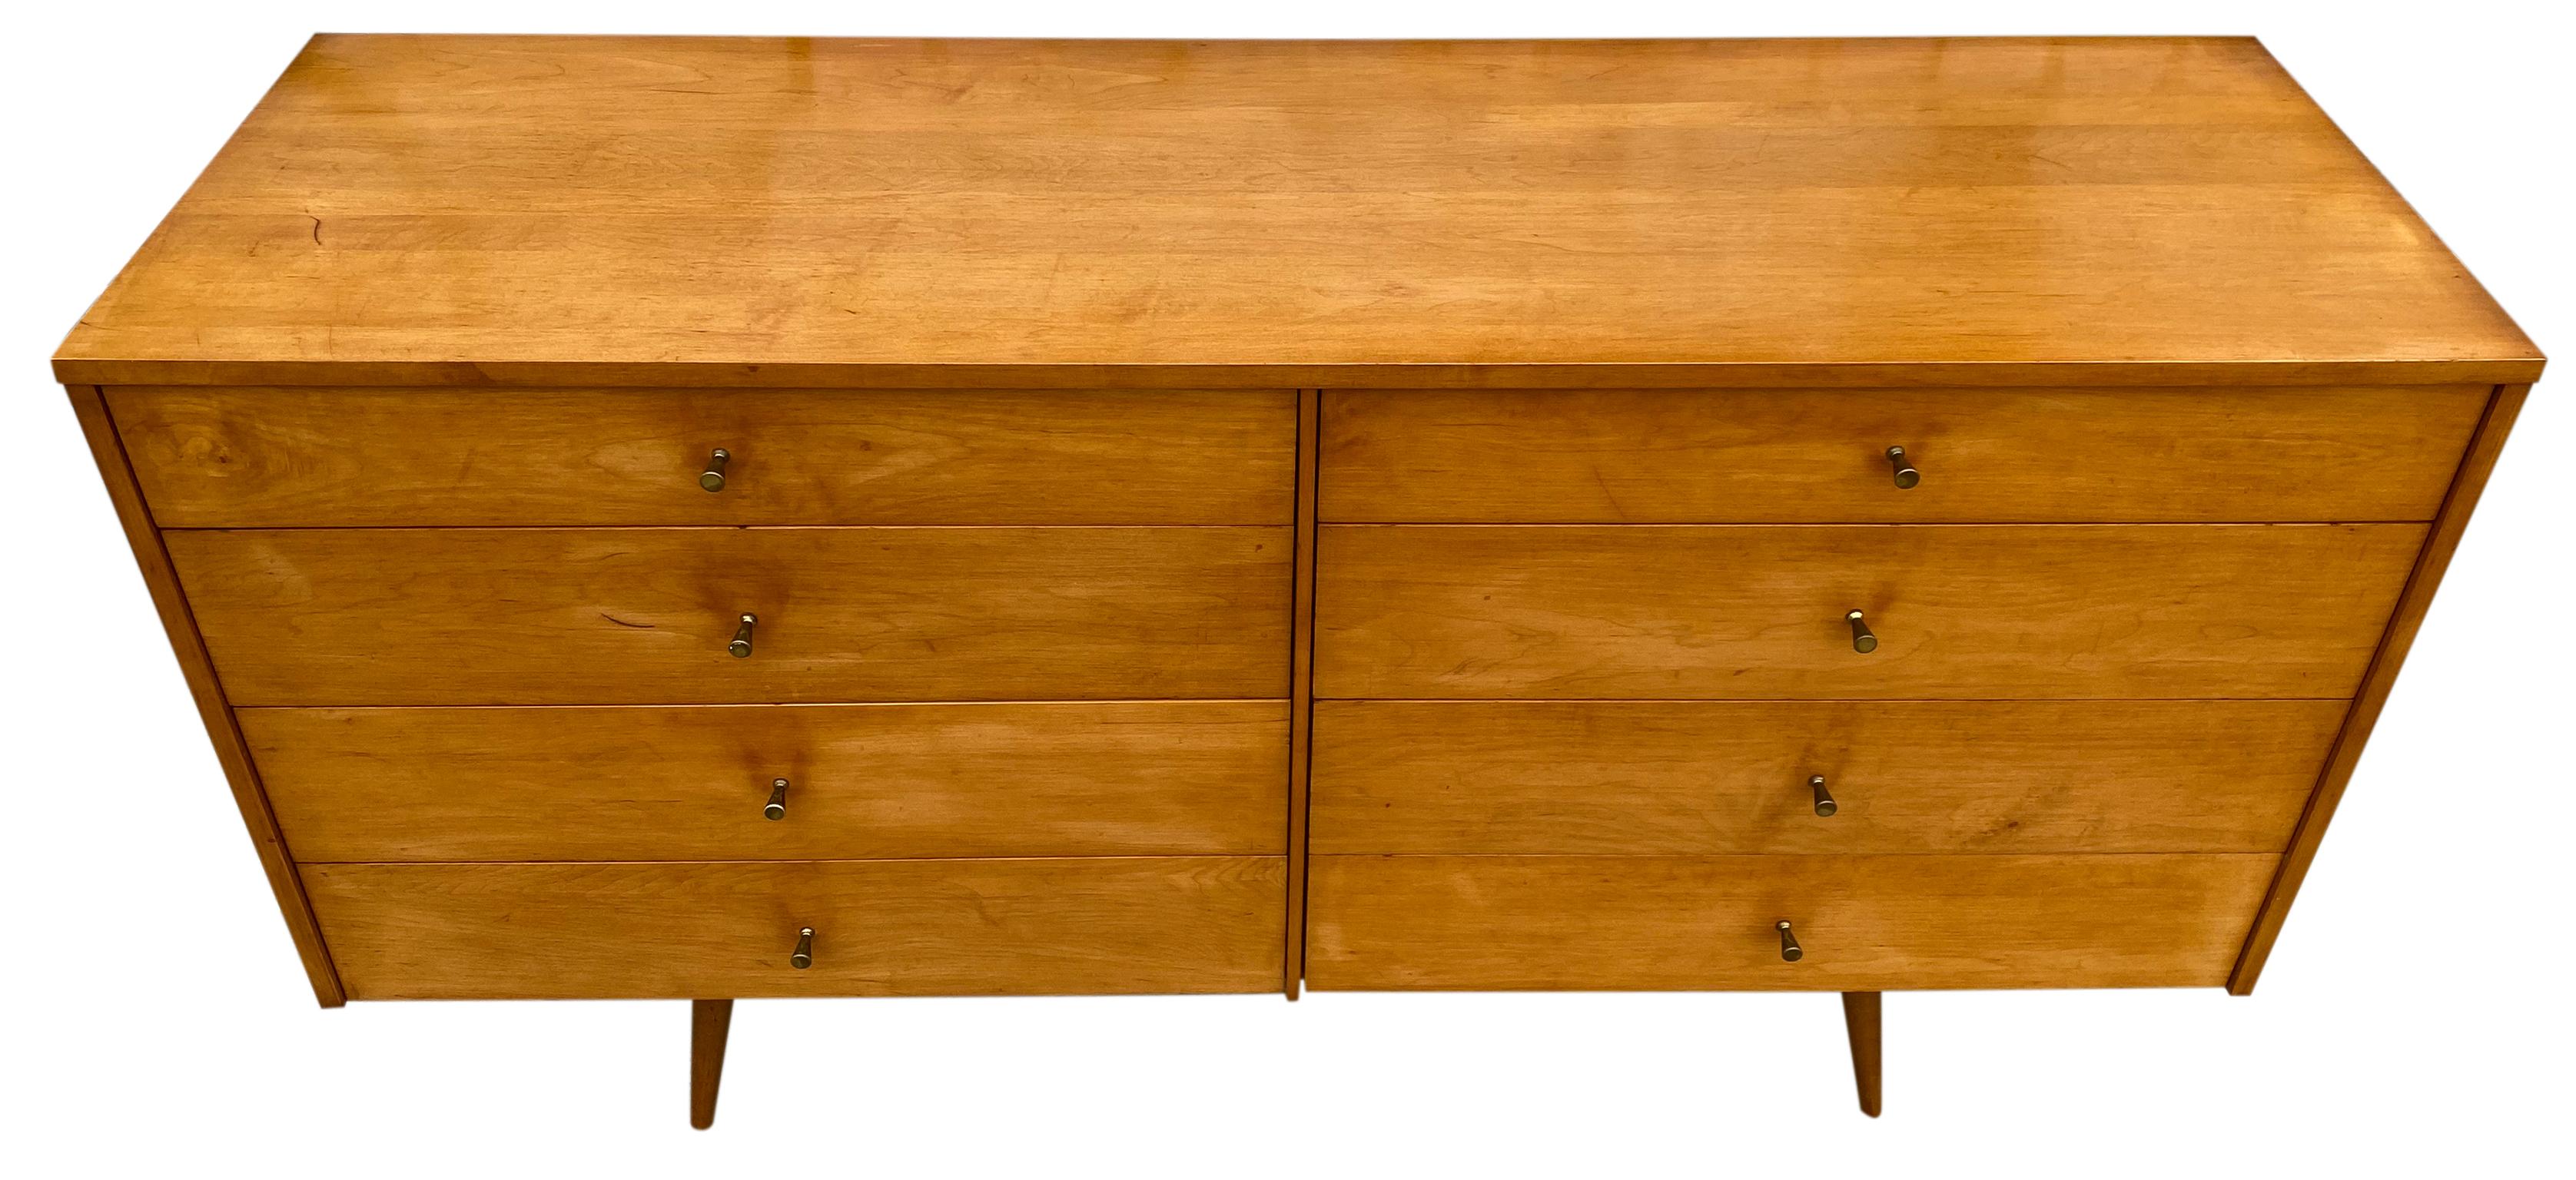 Mid-Century Modern Midcentury Paul McCobb 8-Drawer Dresser Credenza #1507 Maple Brass Blonde Finish